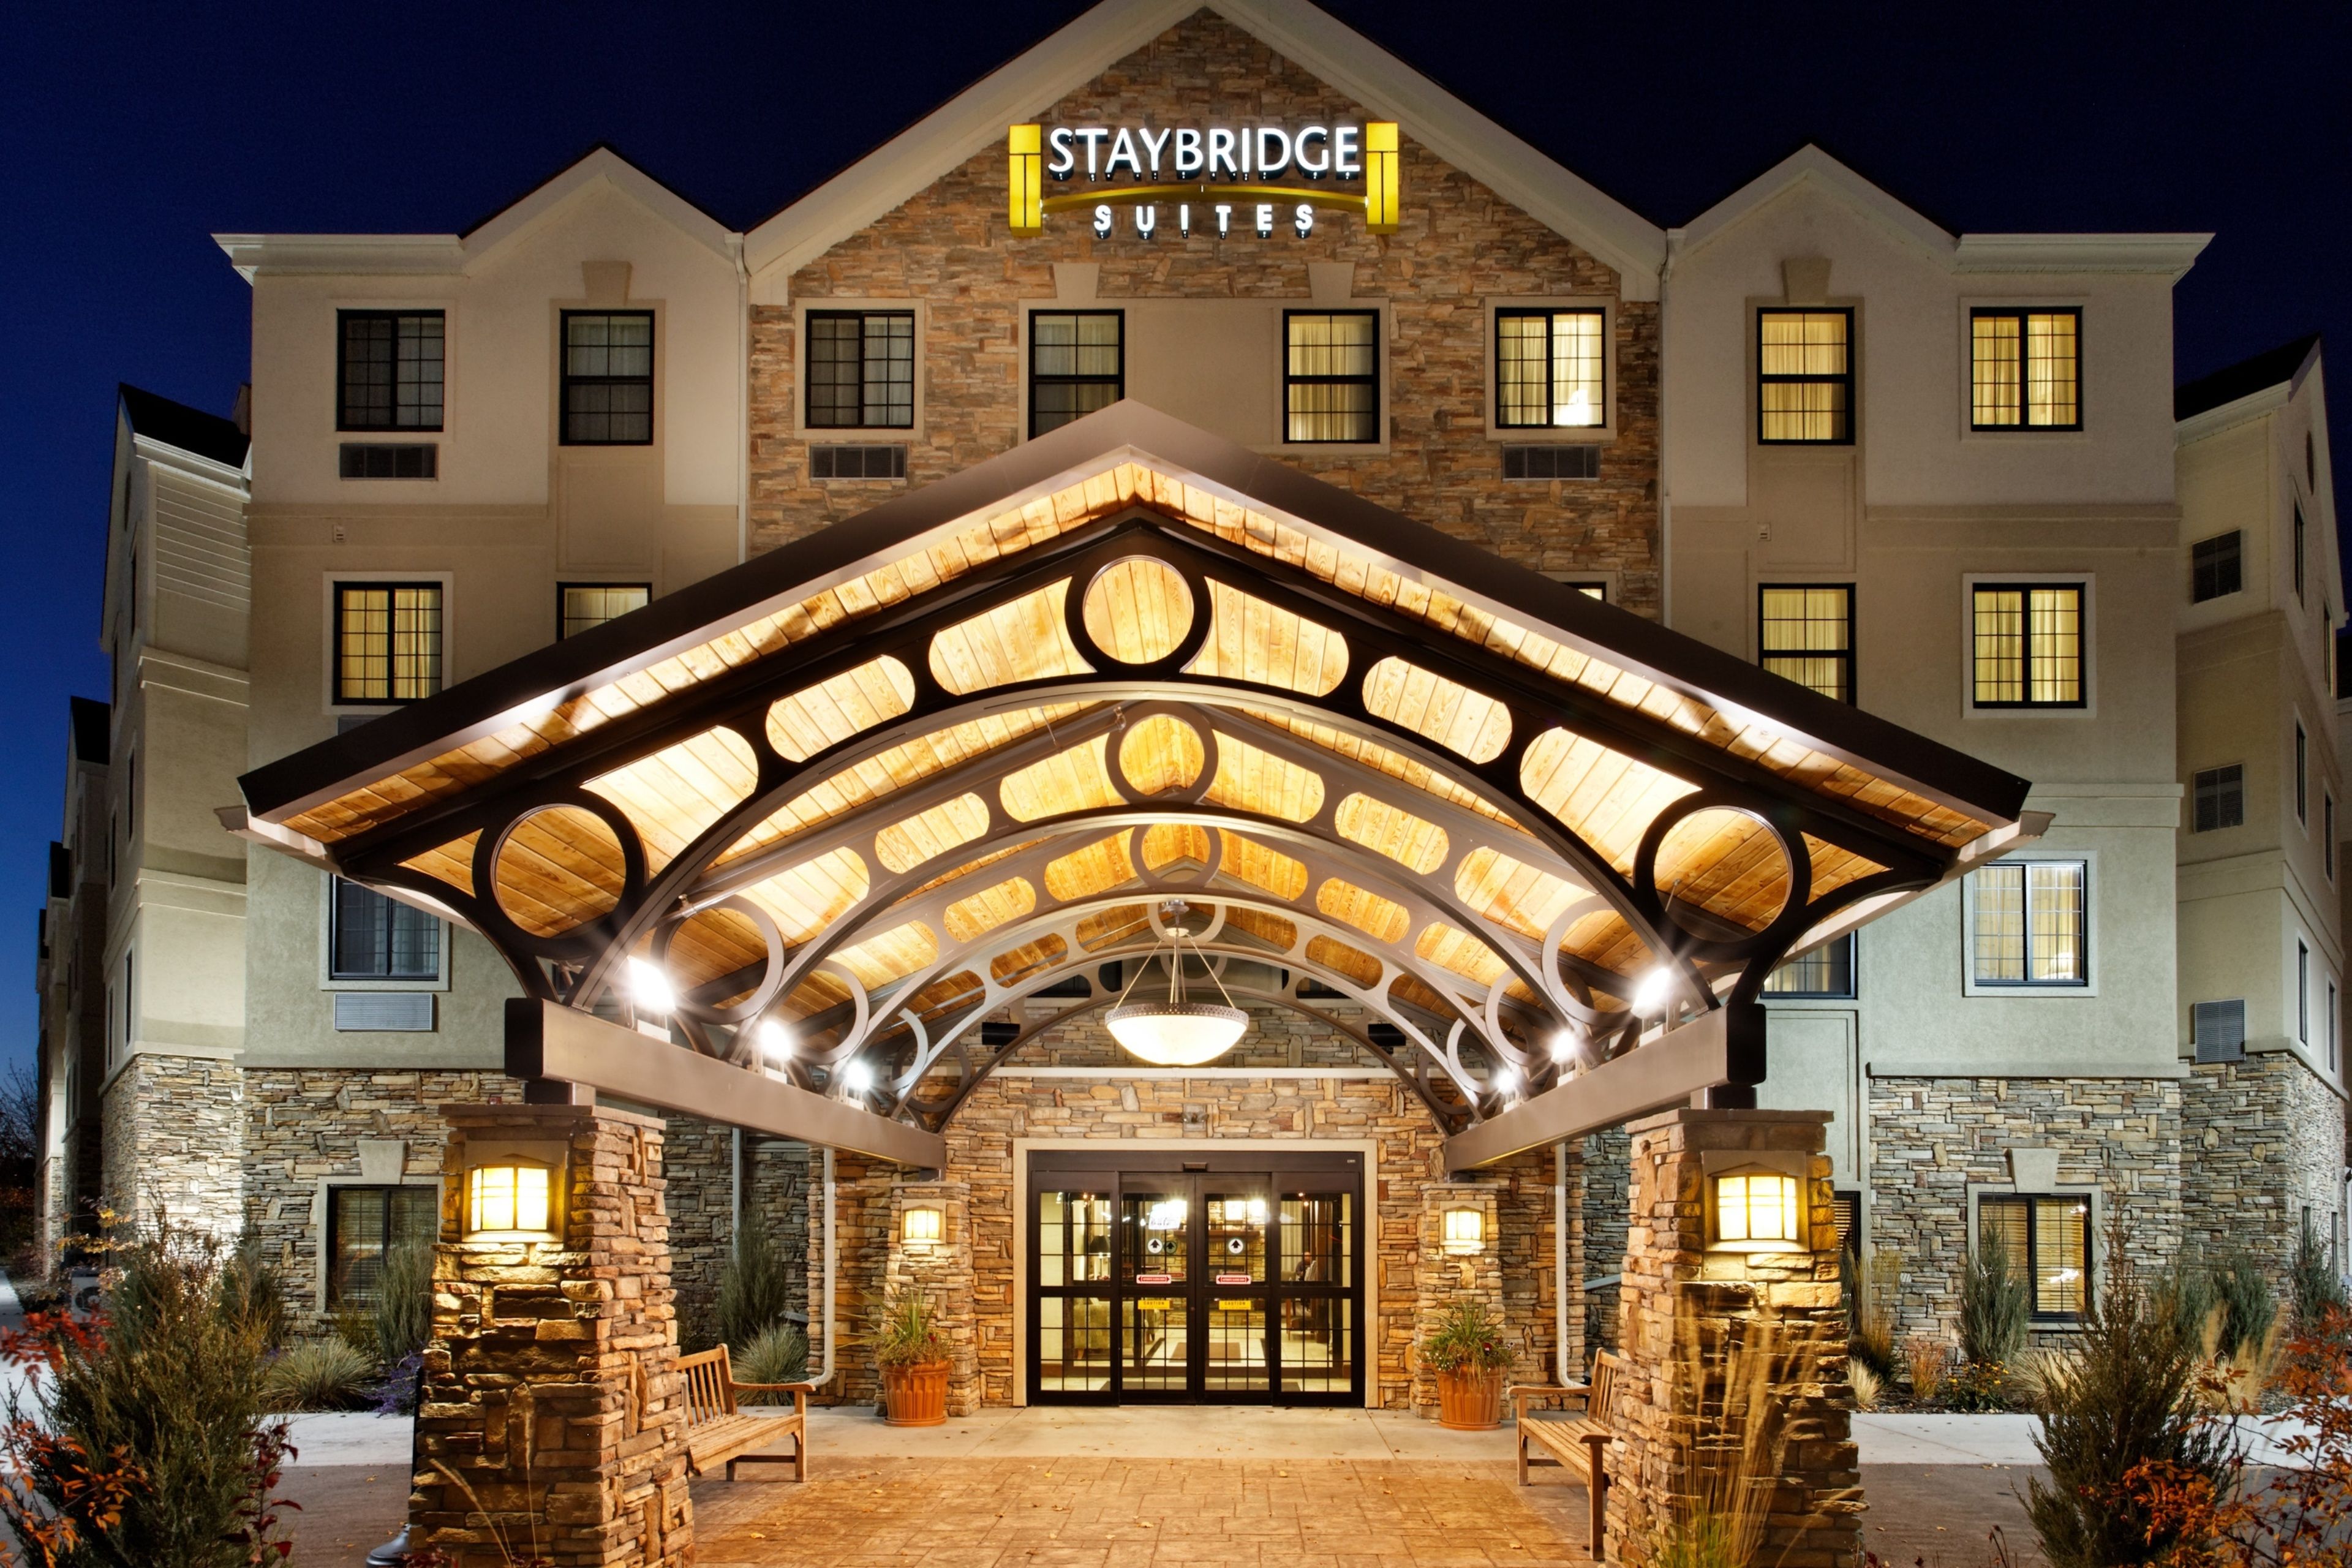 Staybridge Suites - Little Rock - Medical Center image 1